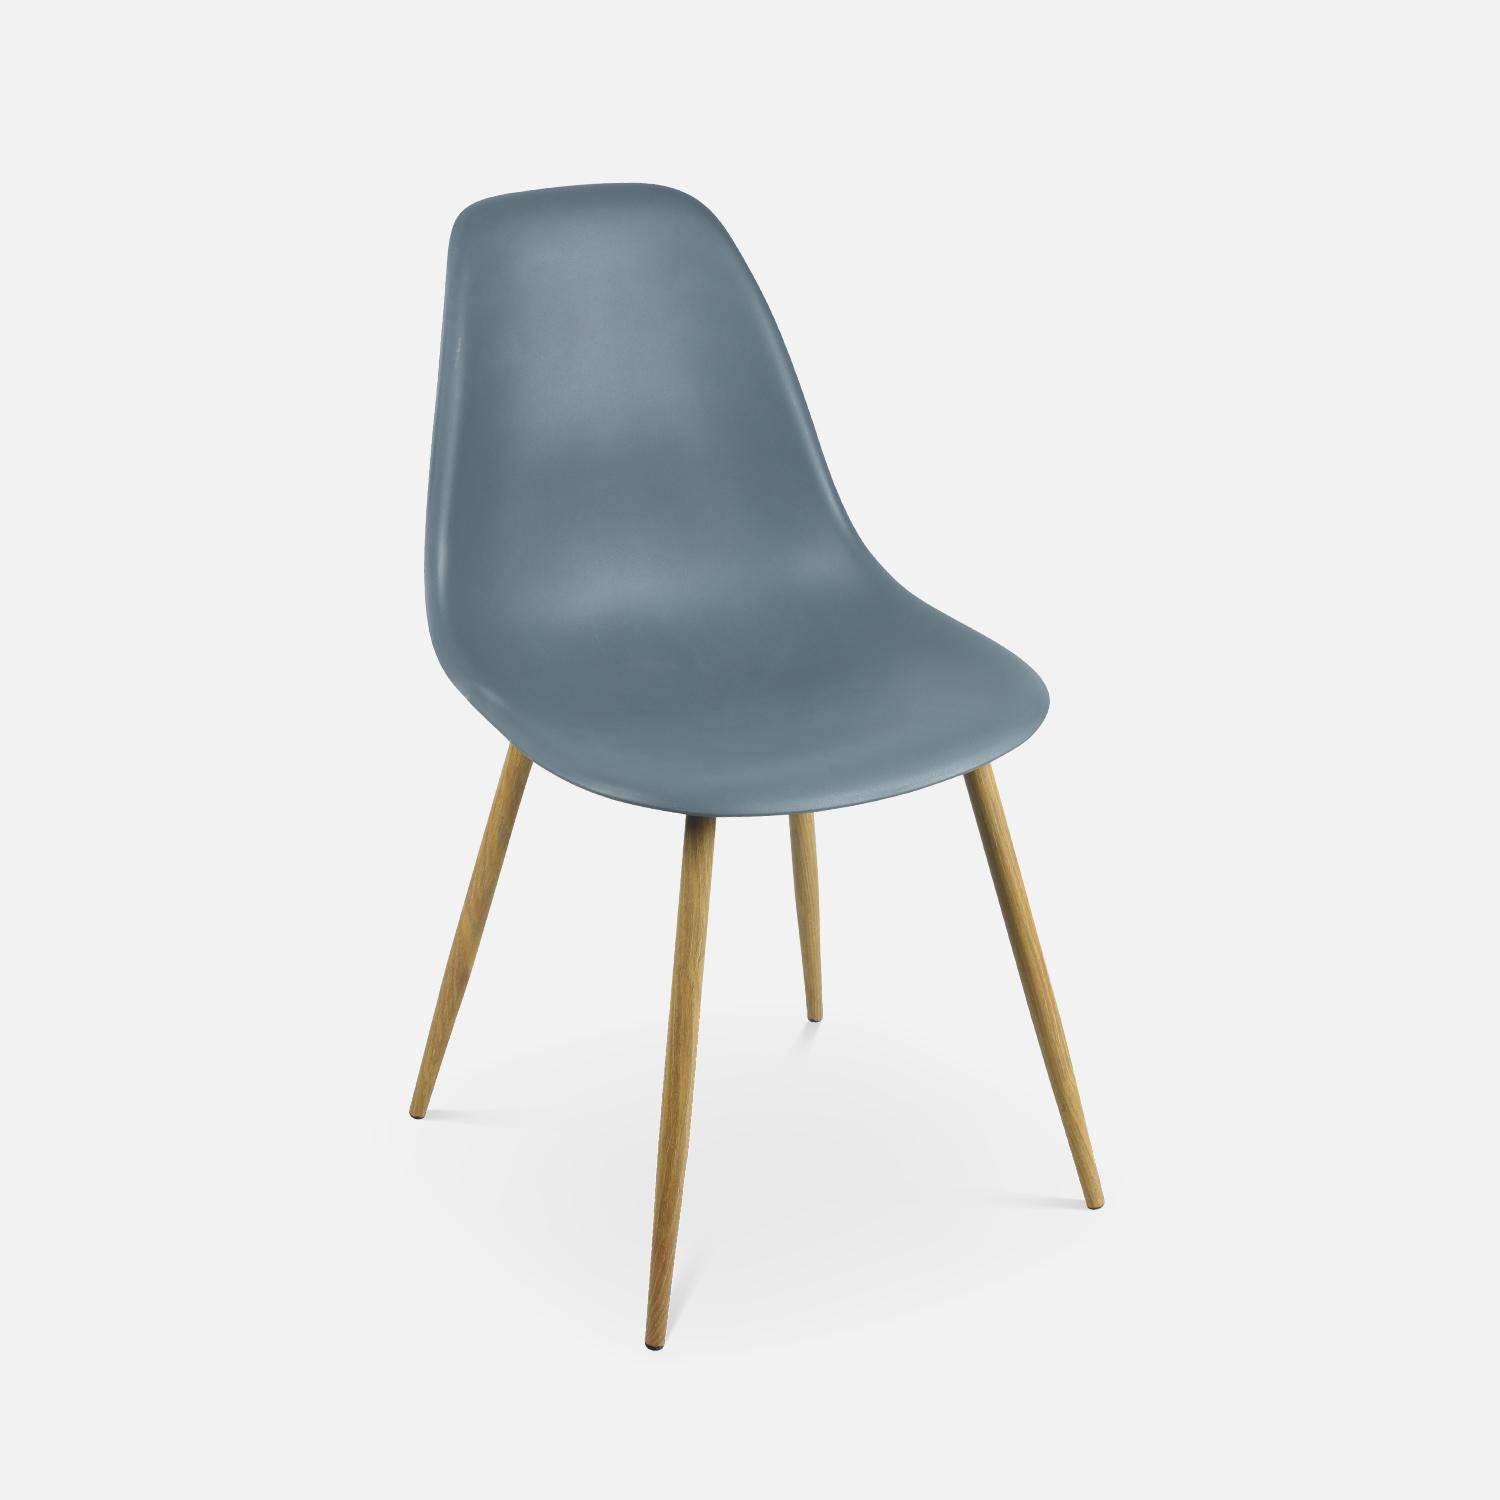 Juego de 4 sillas escandinavas - Lars - patas de metal color madera, sillas de una plaza, color gris,sweeek,Photo5